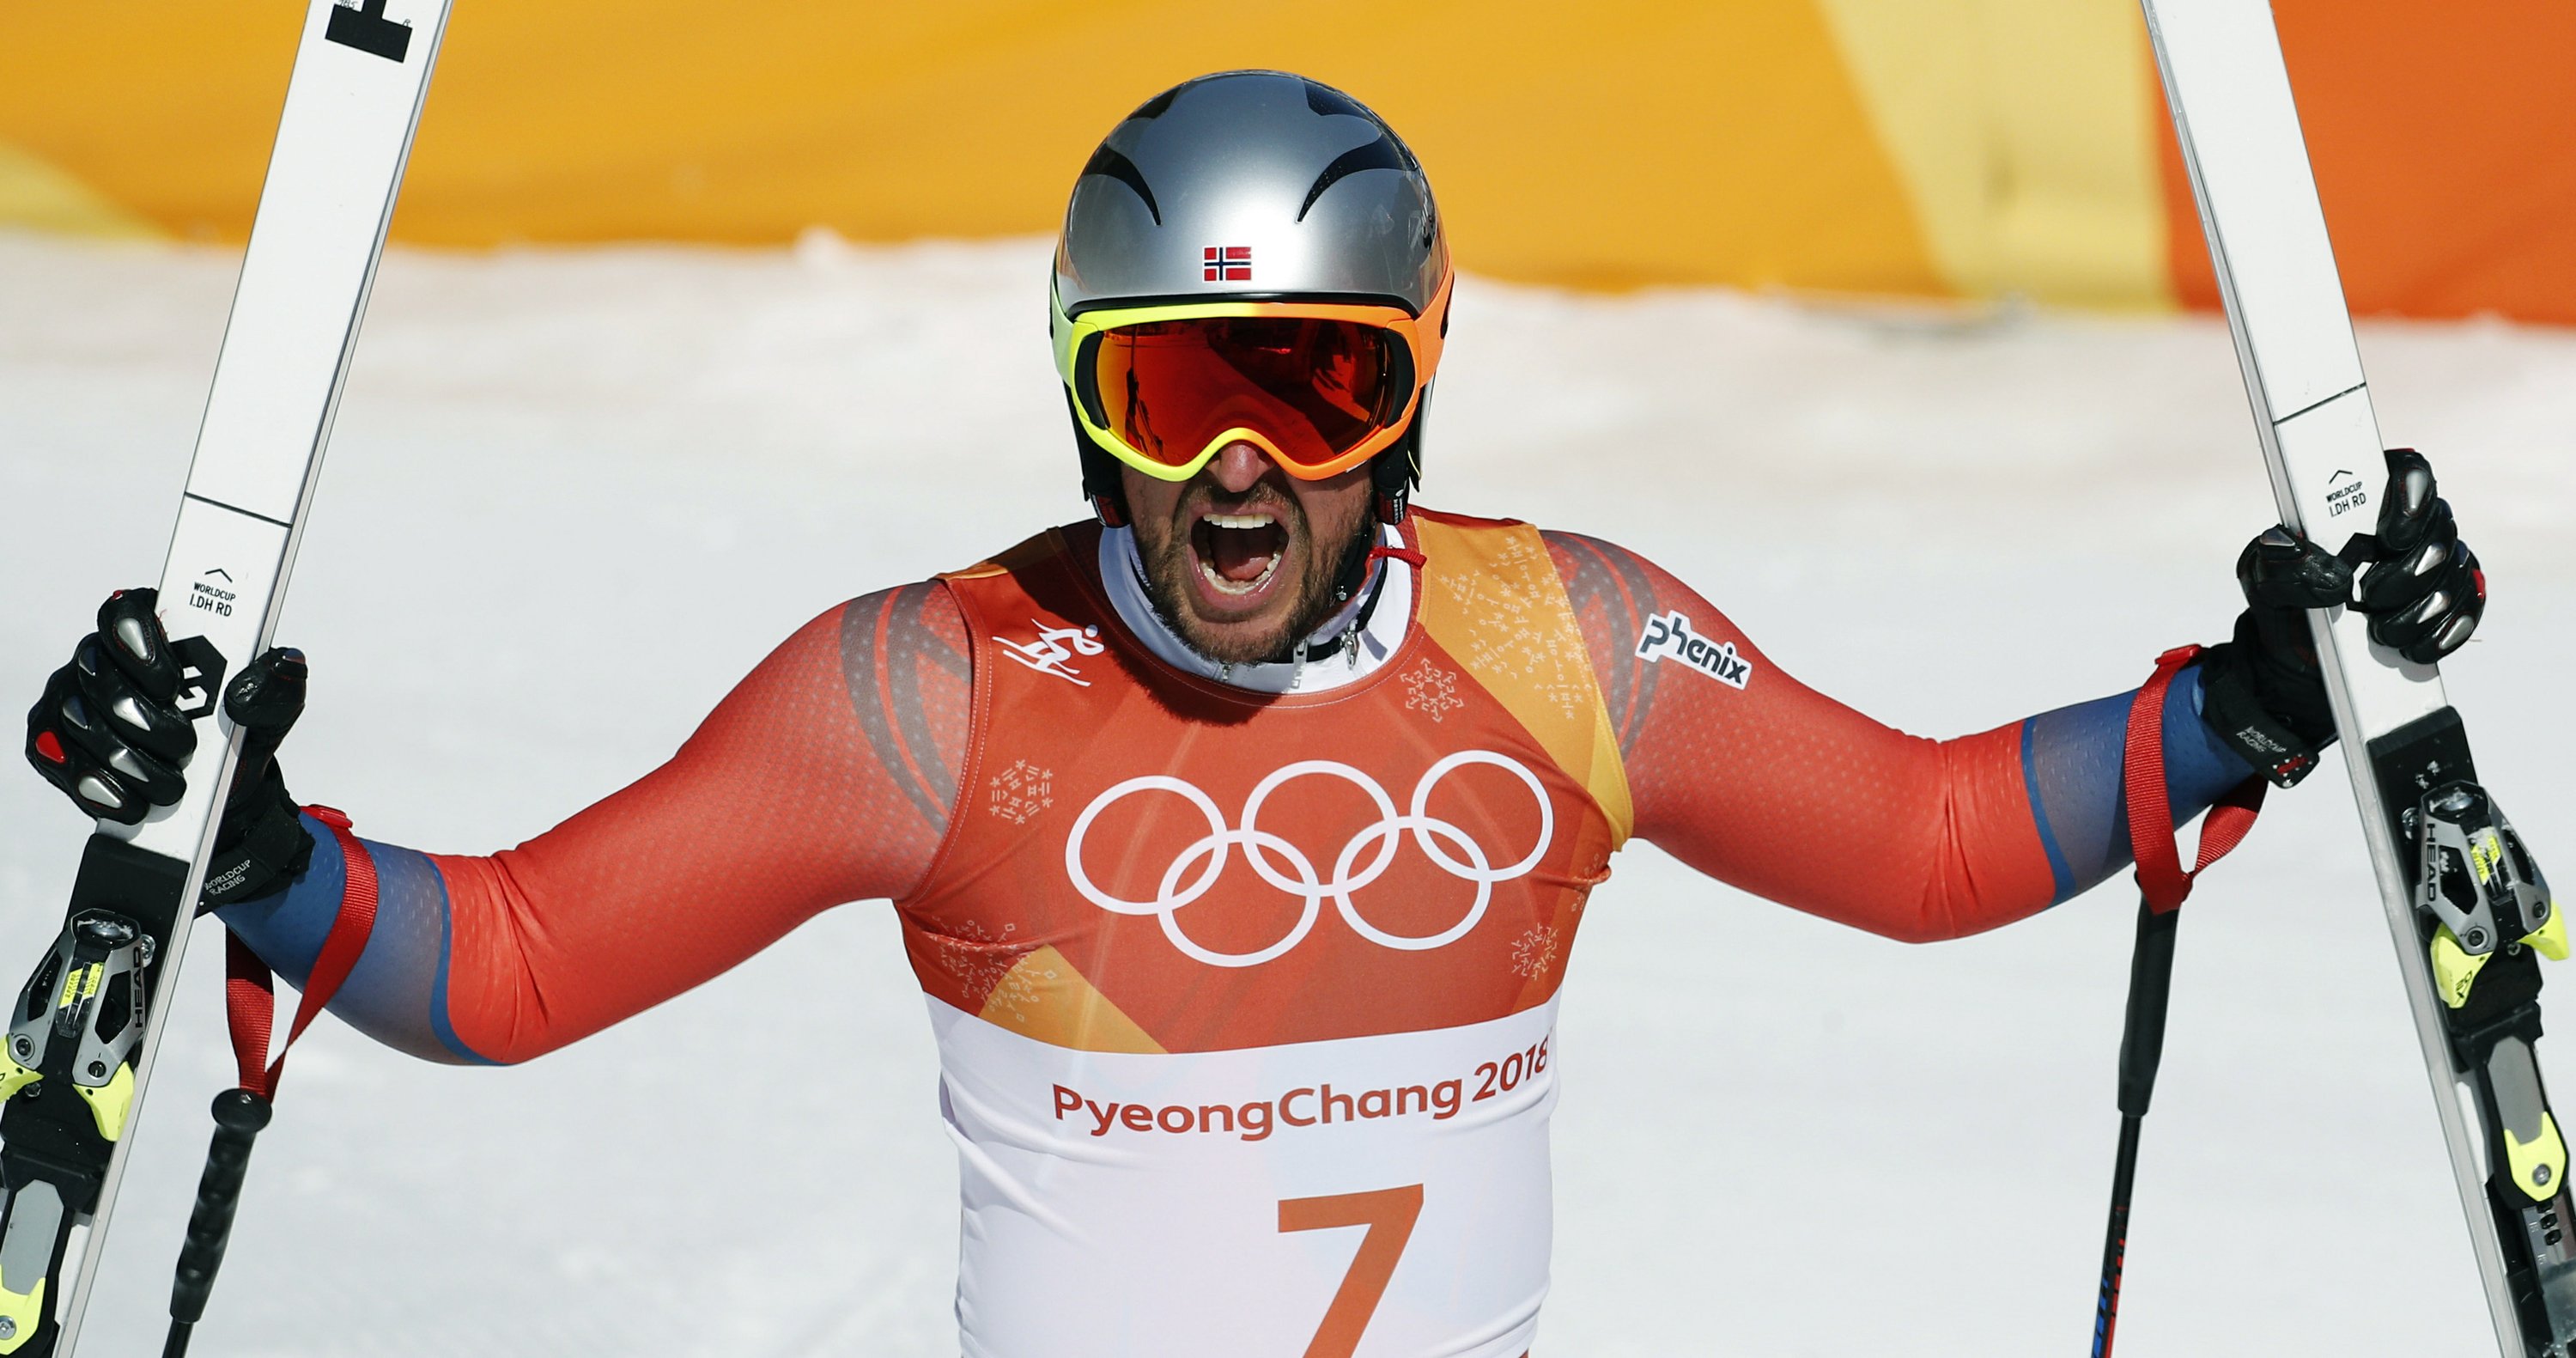 Аксель Лунд Свиндаль на зимних Олимпийских играх 2018